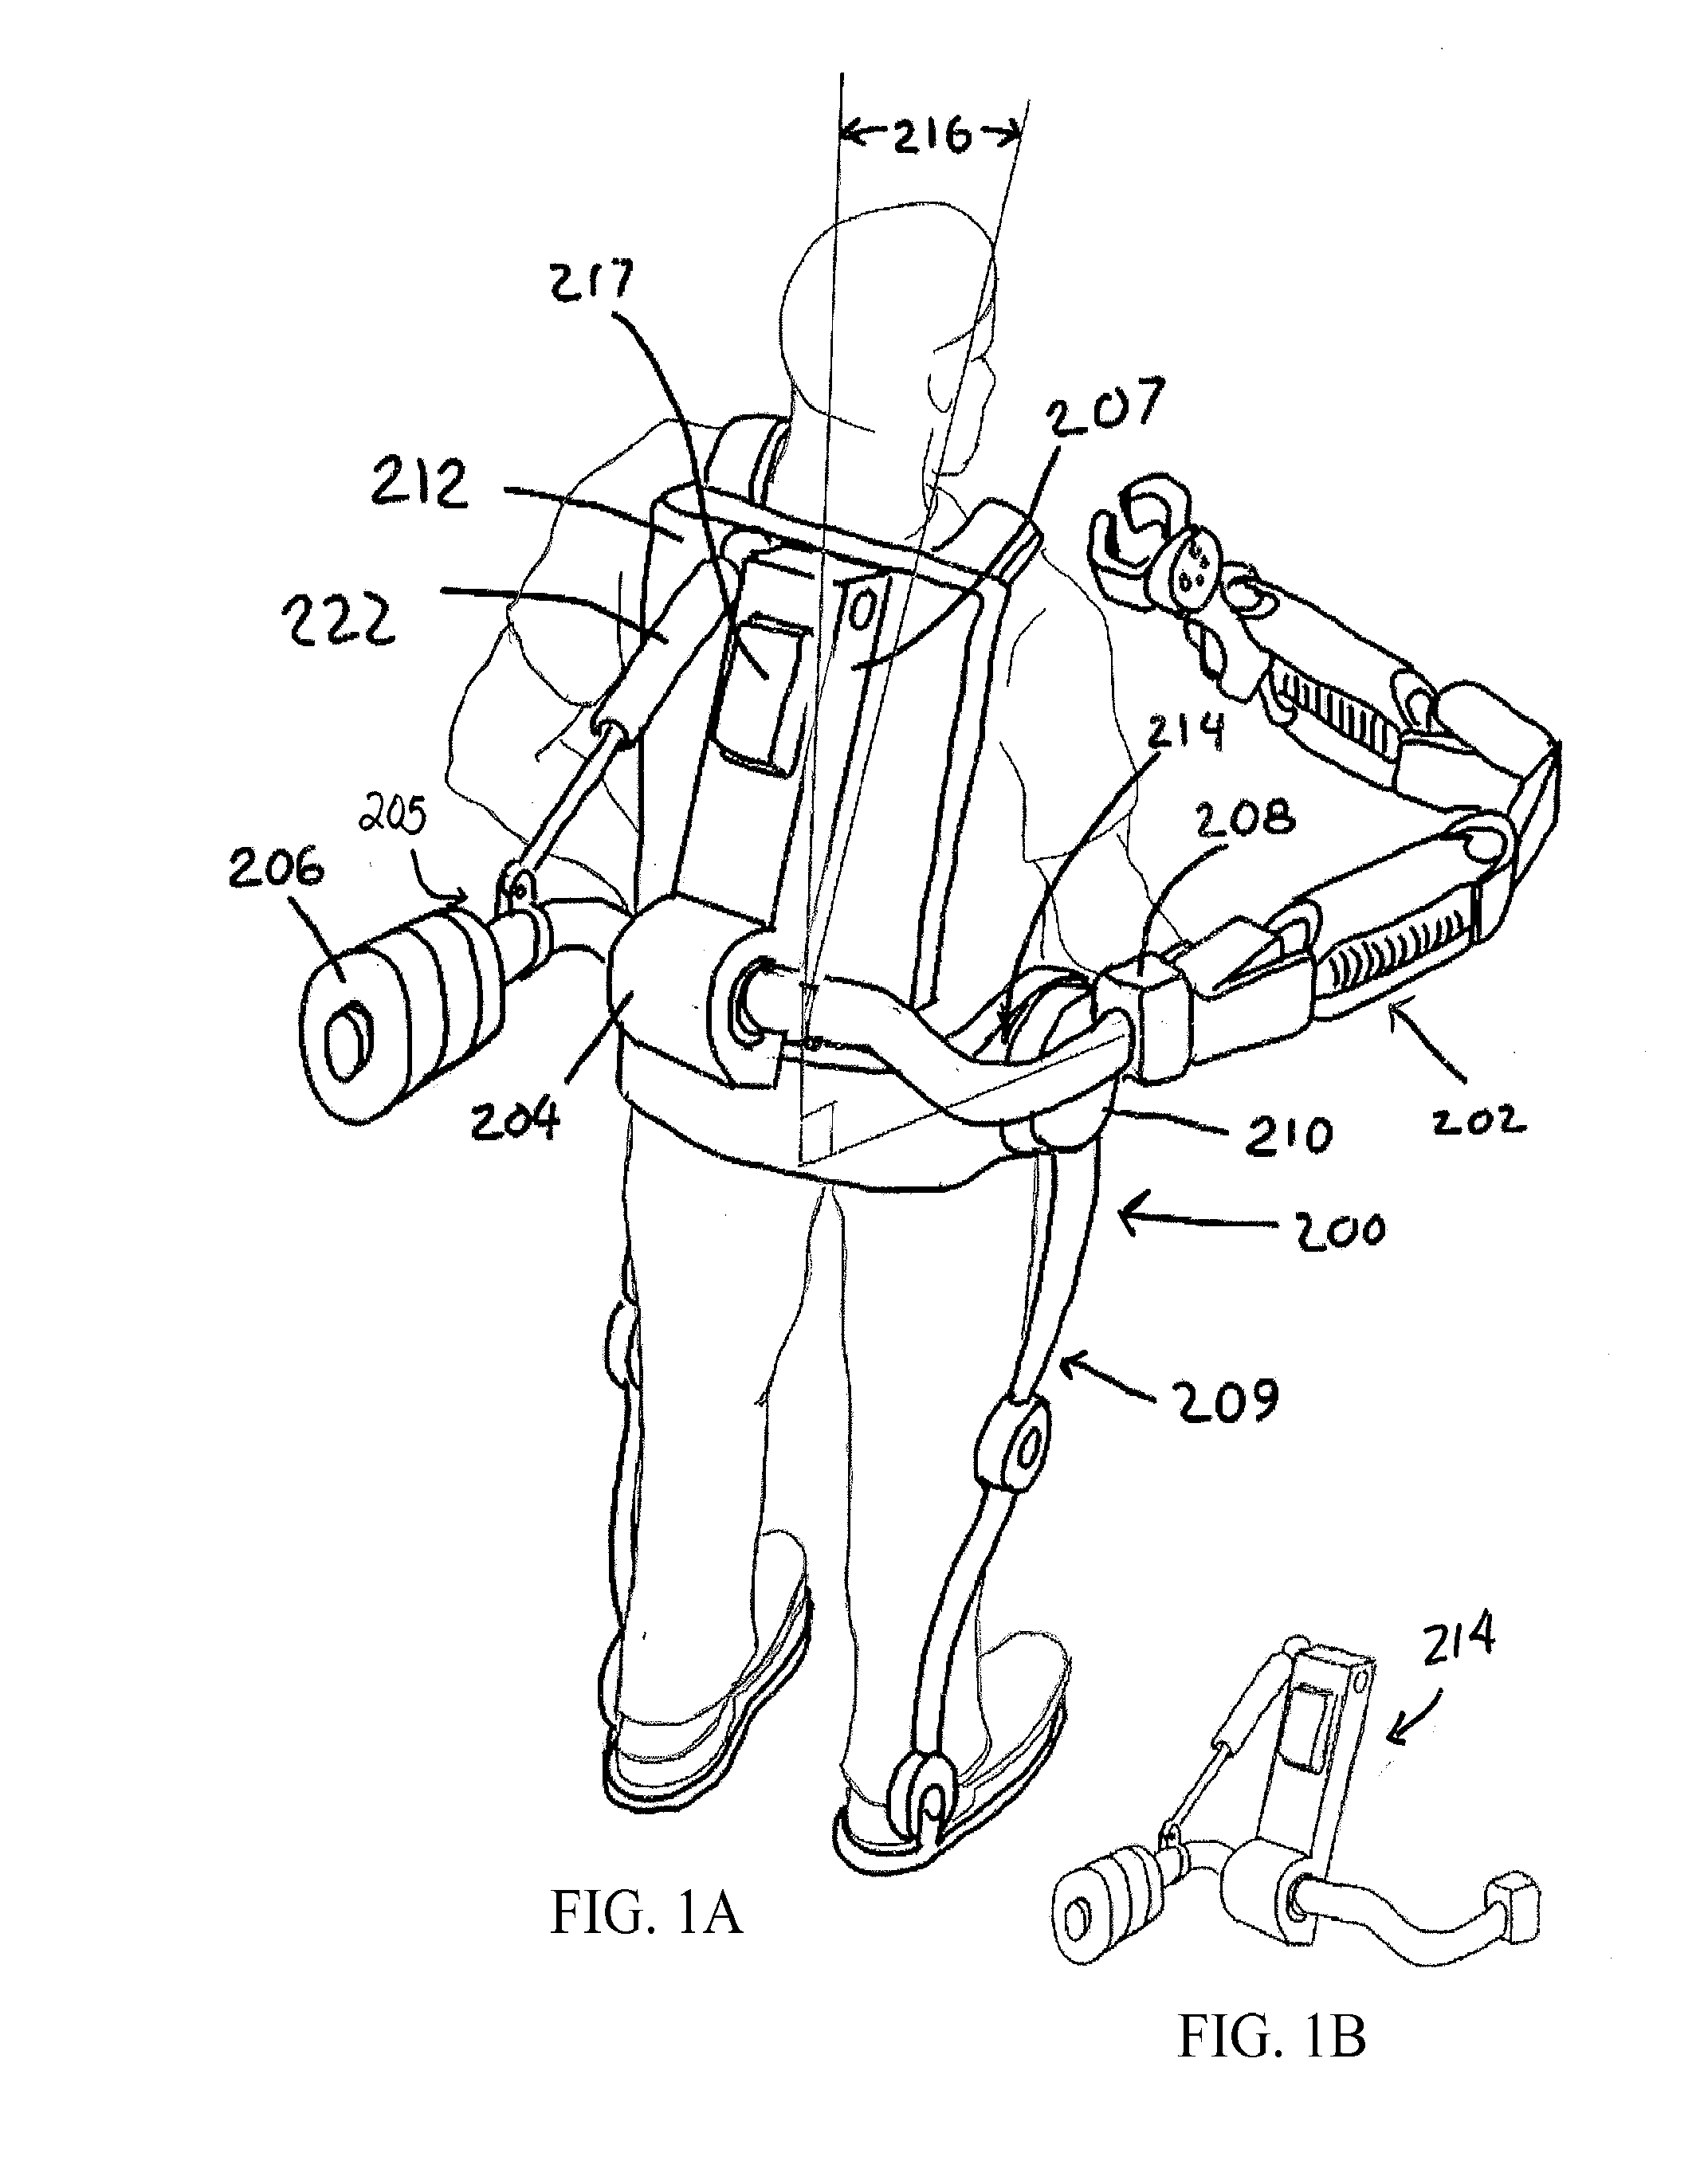 Exoskeleton arm interface